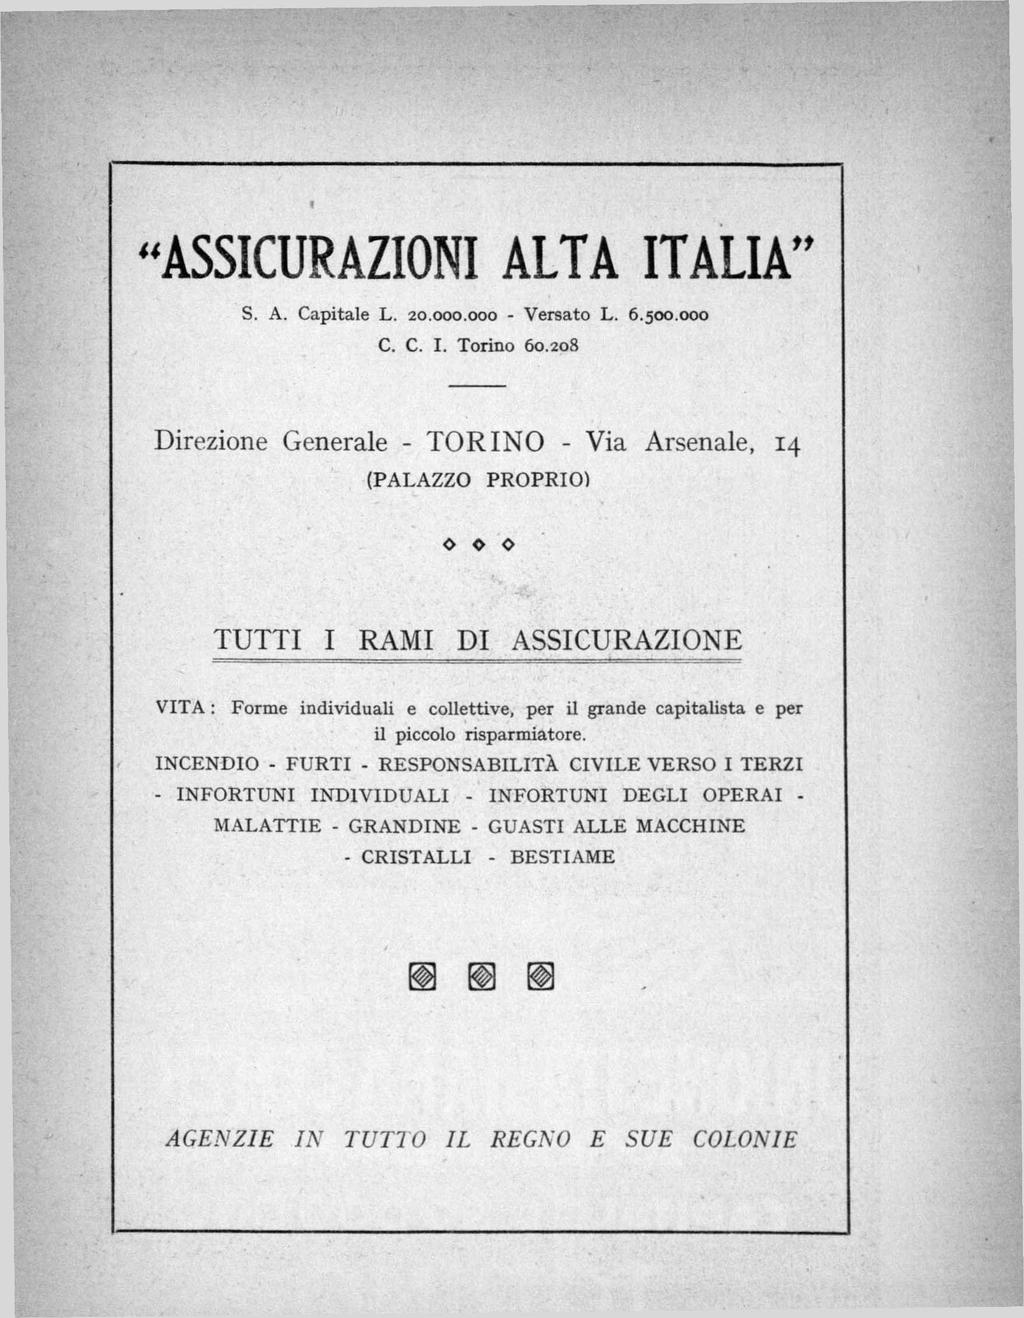 ASSICURAZIONI ALTA ITALIA S. A. Capitale L. 20.000.000 - Versato L. 6.500.000 C. C. I. Torino 60.